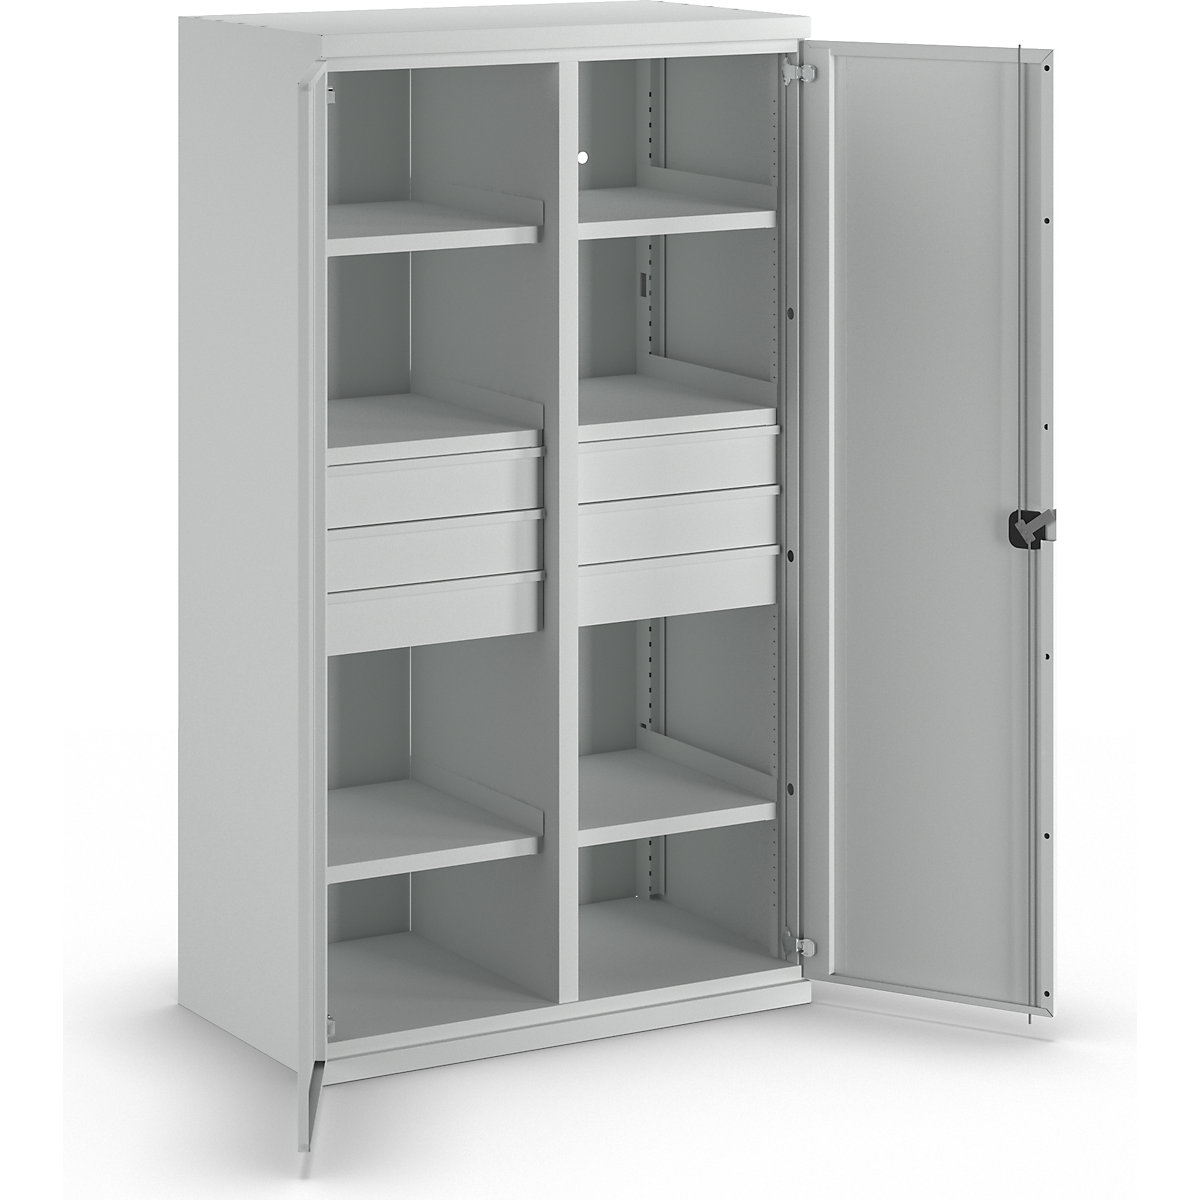 Heavy duty cupboard made of steel - eurokraft pro